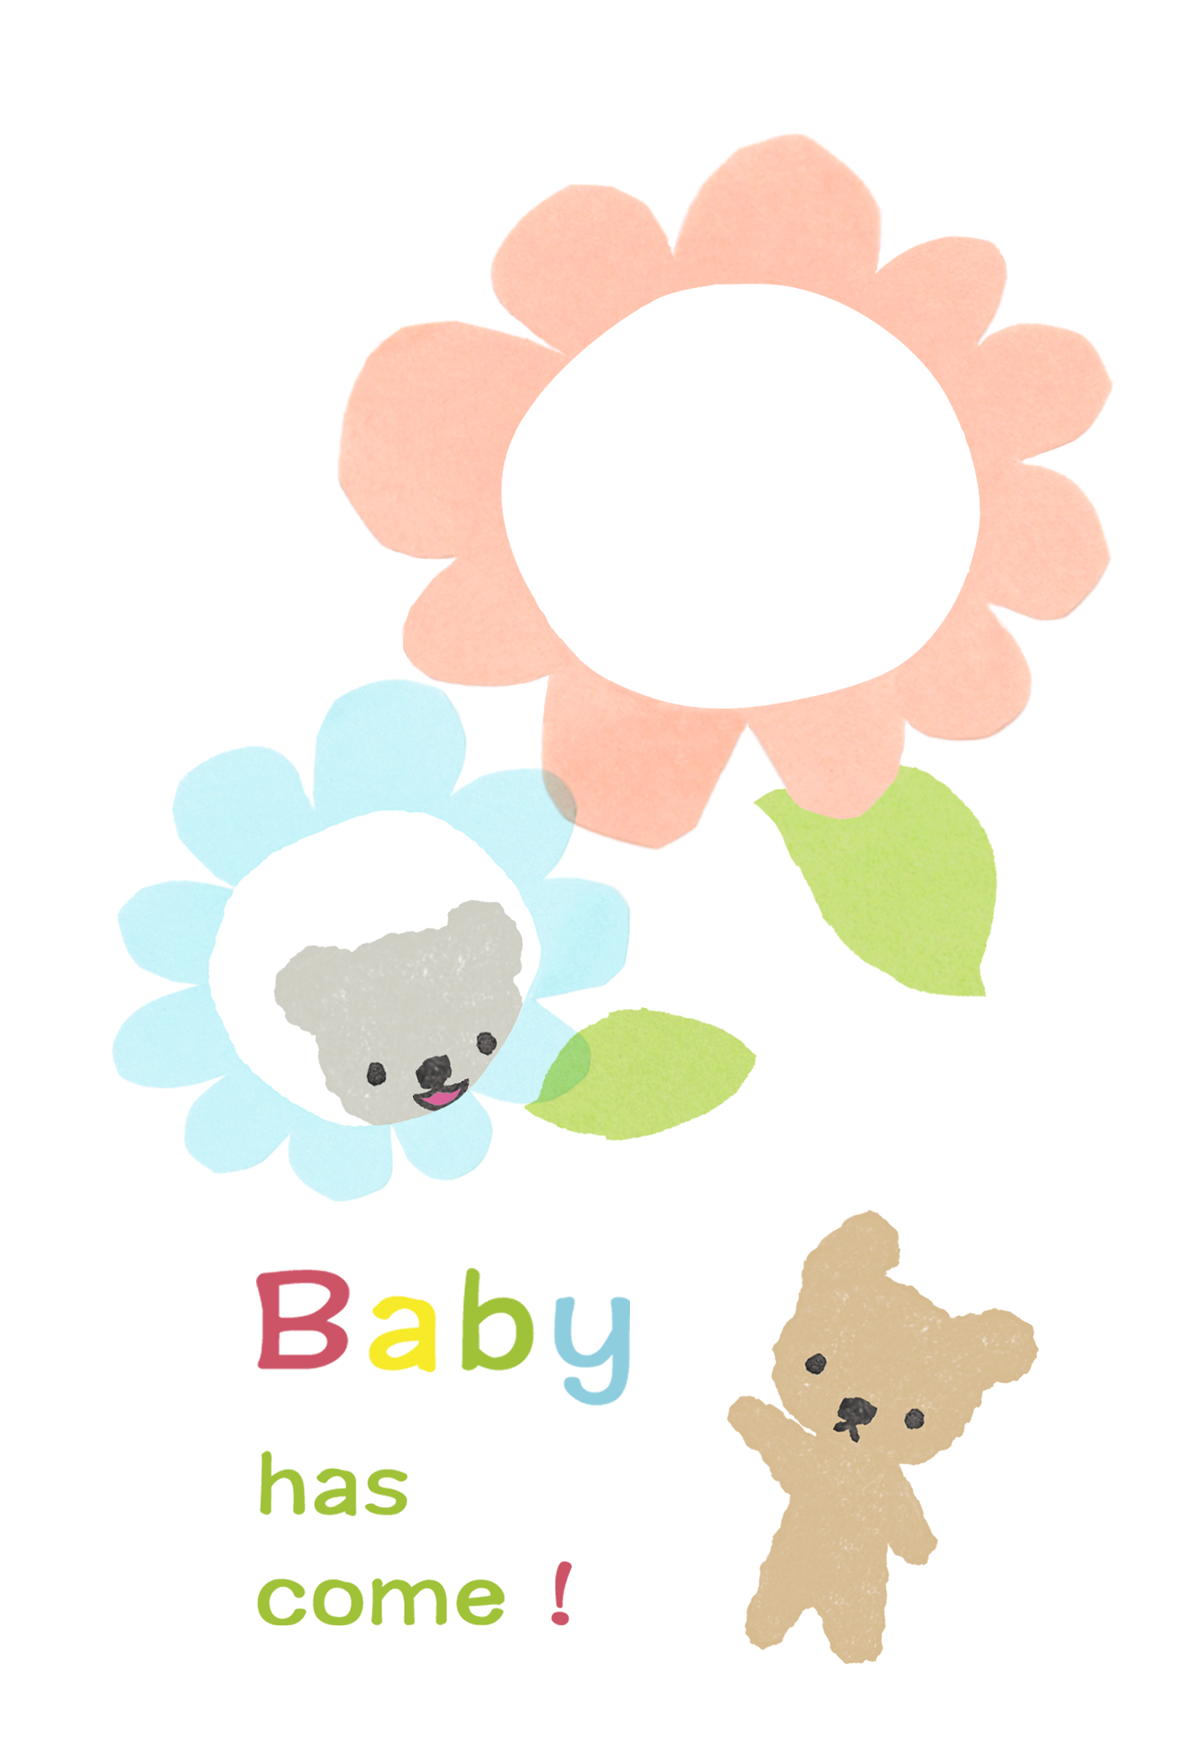 赤ちゃんの誕生をお知らせするカードのイラスト画像